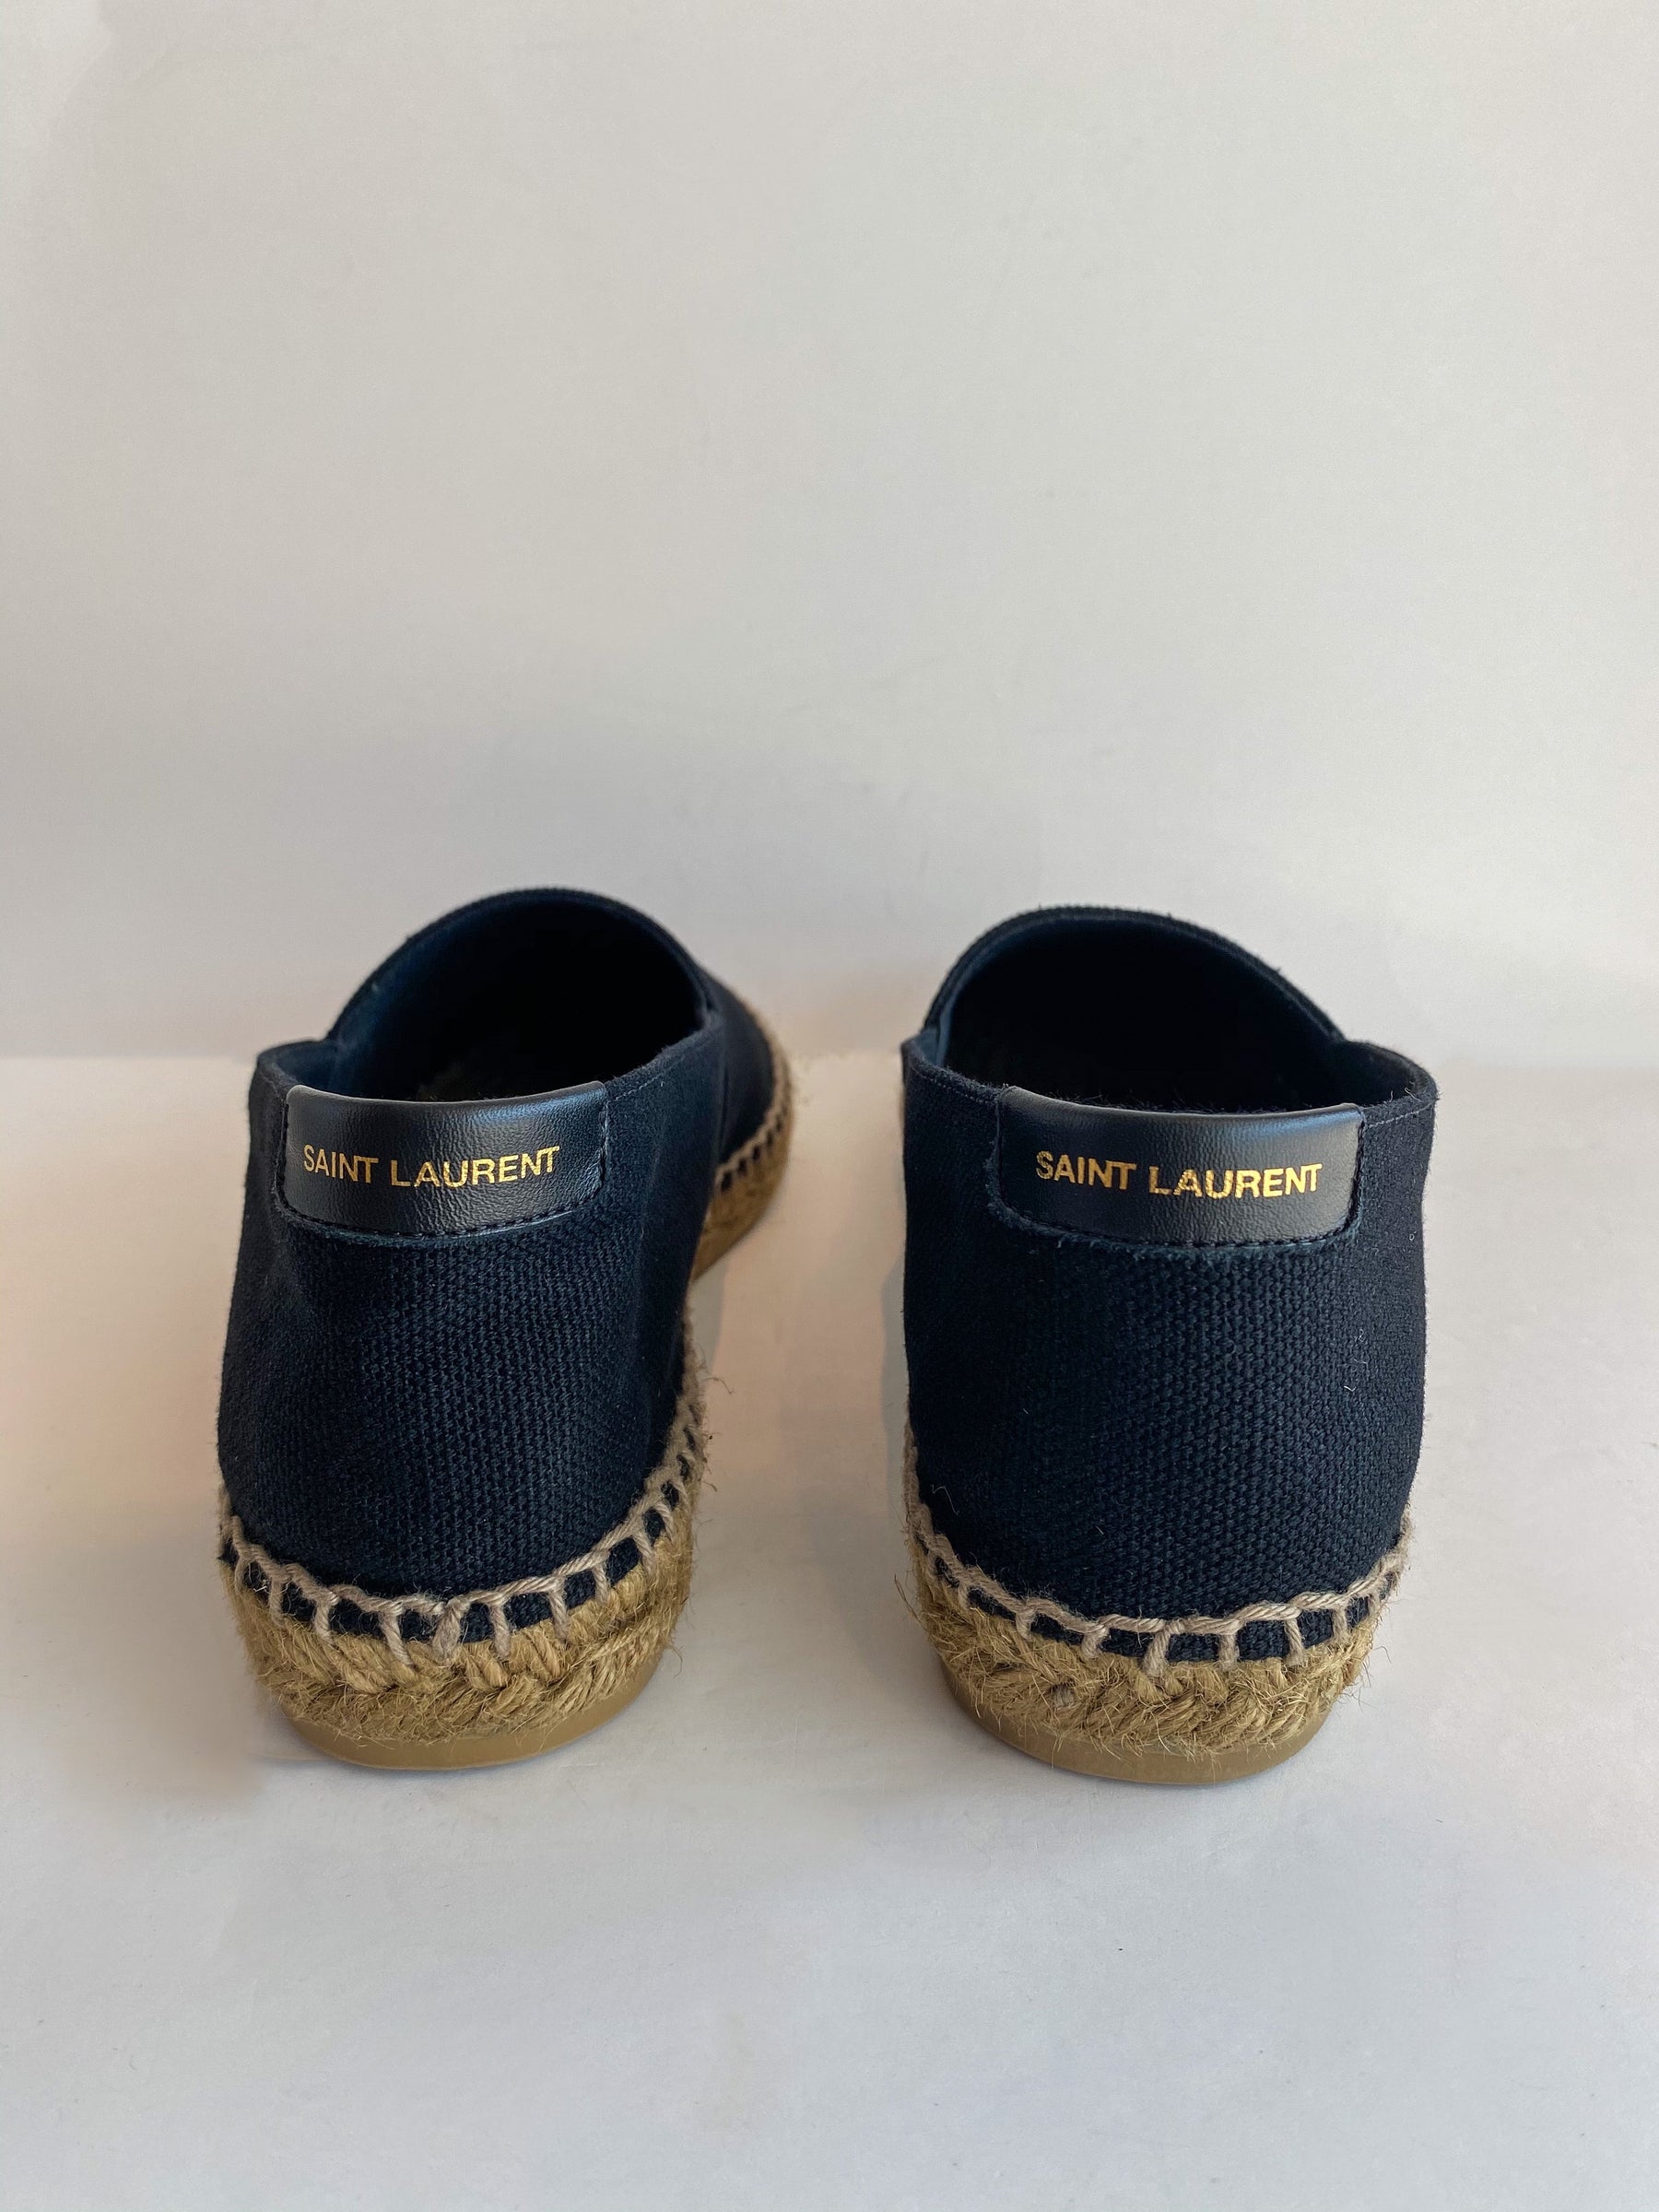 Saint Laurent Espadrilles Embroidered Black Back of Shoes